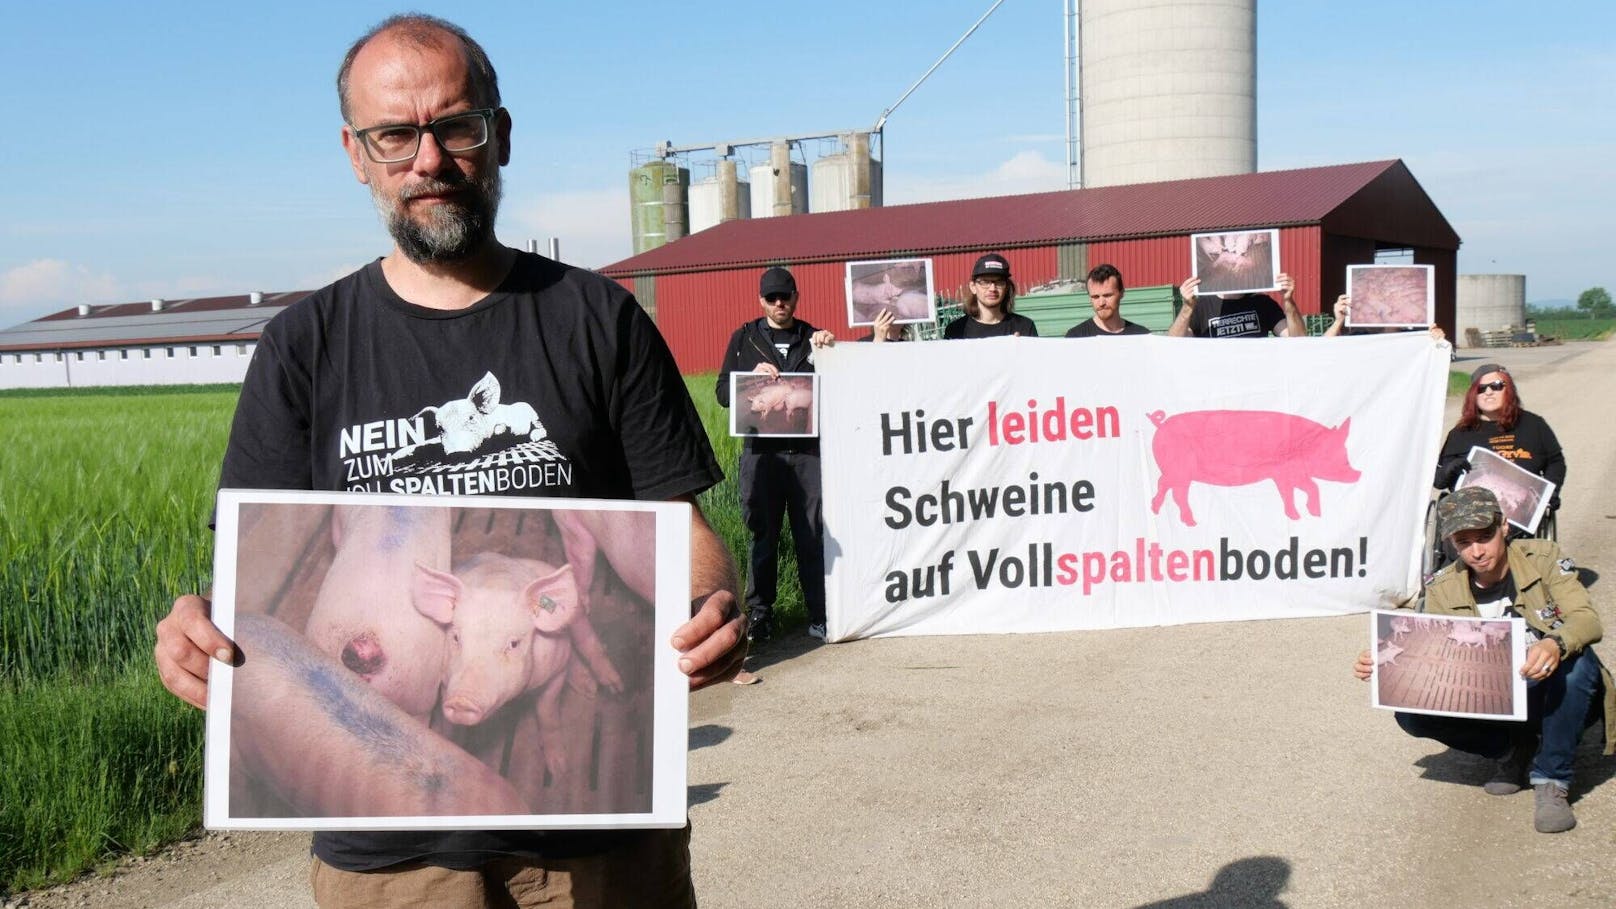 "Grauenhafte Zustände" in Schweinemastbetrieb regen auf